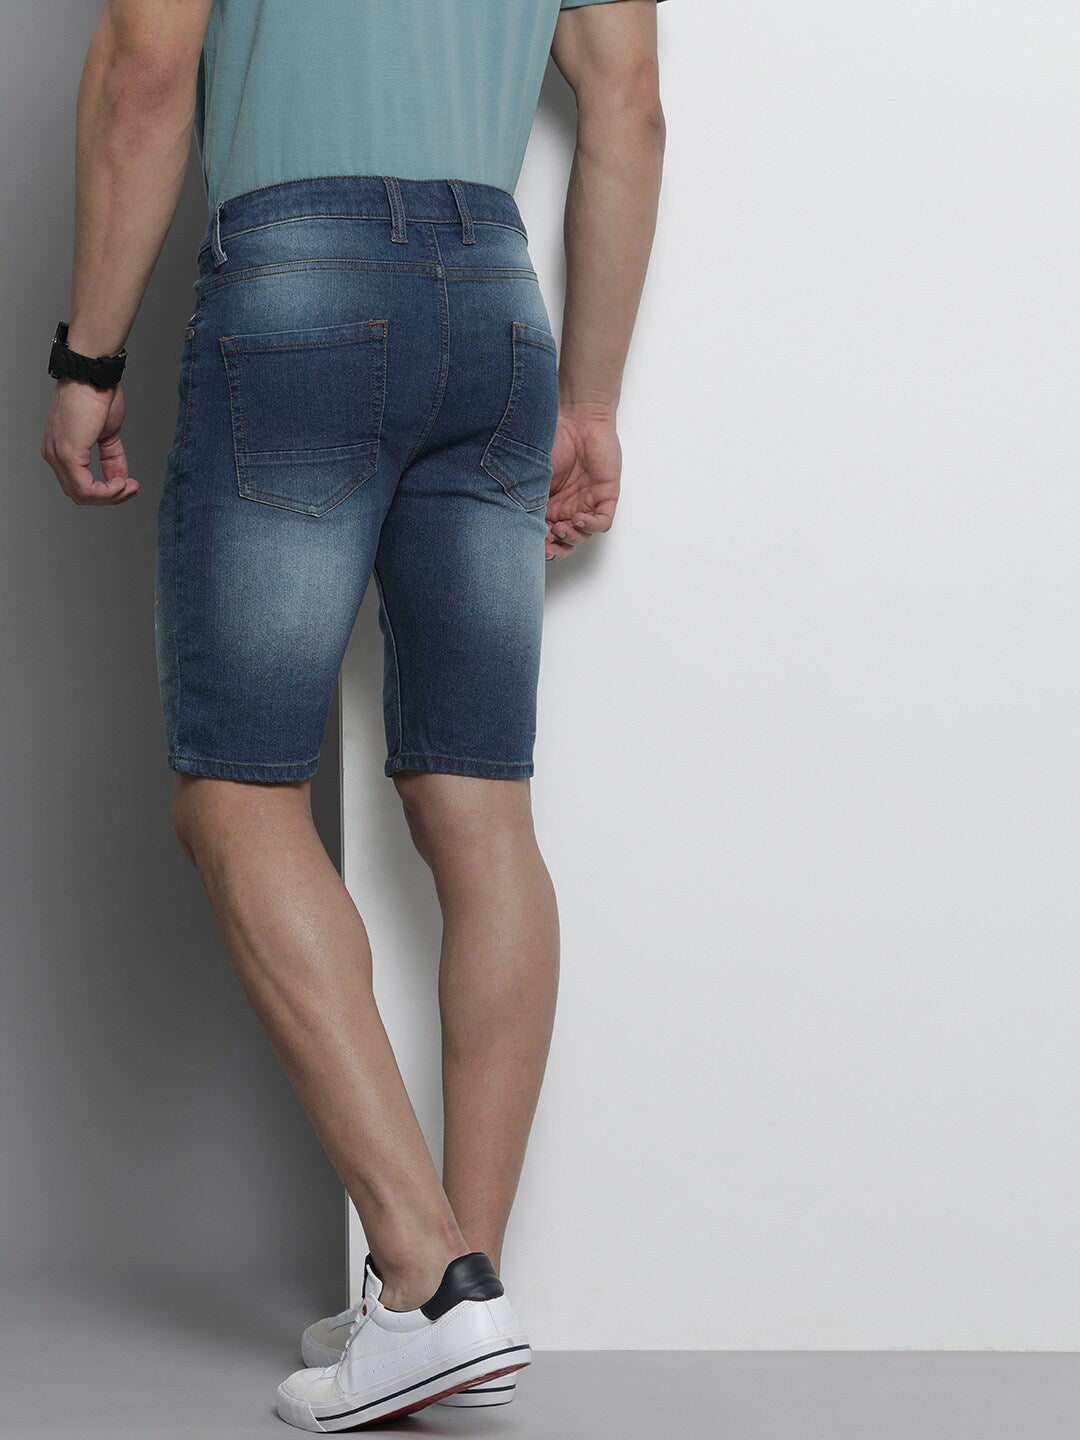 Shop The Indian Garage Co Men Blue Printed Slim Fit Denim Shorts Online.